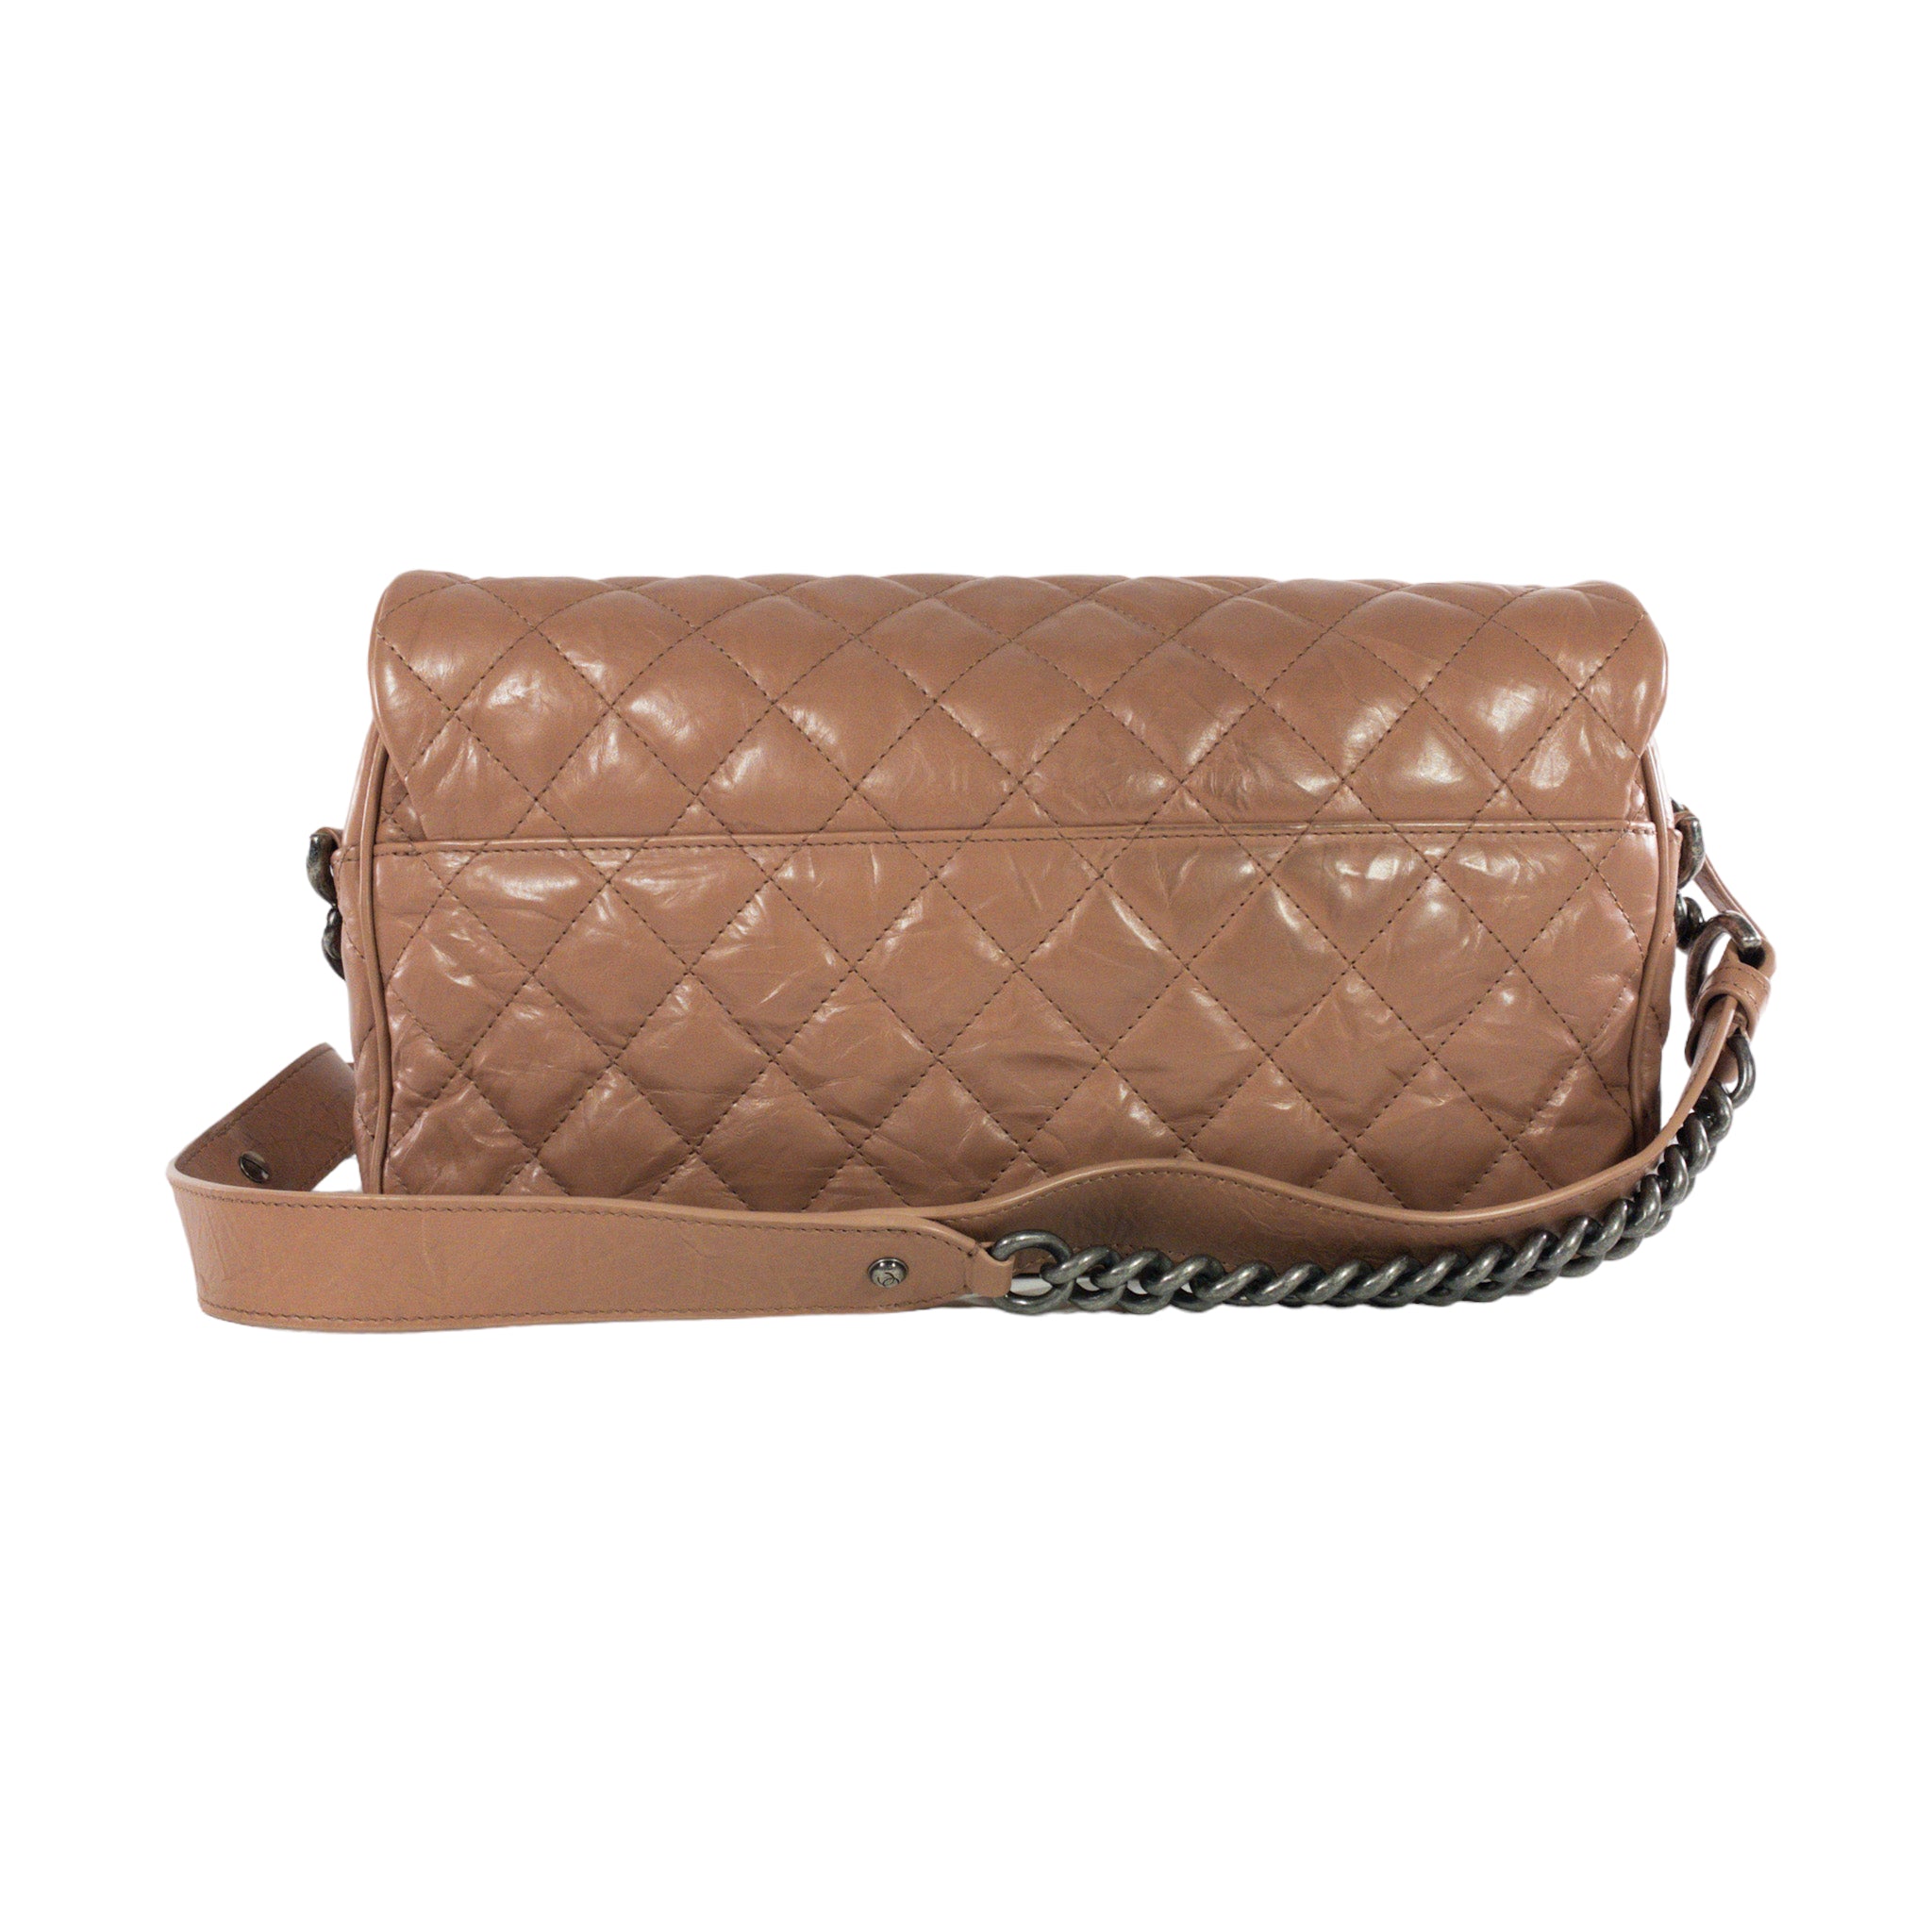 Chanel Blush Glazed Leather Large Flap